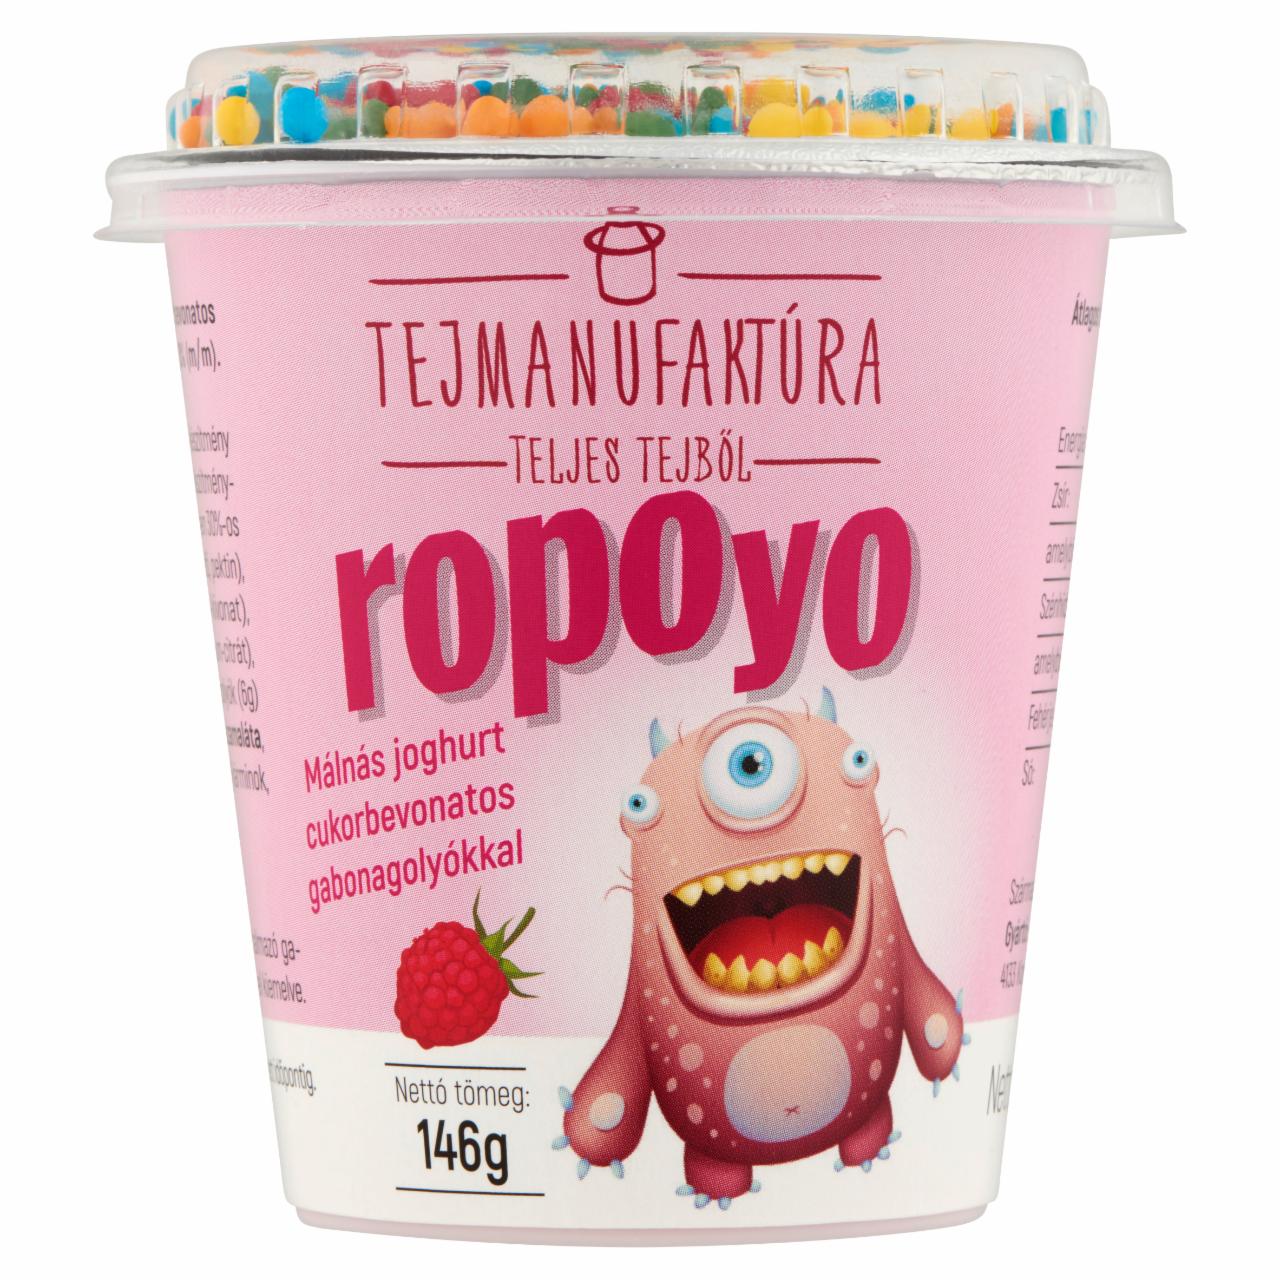 Képek - Tejmanufaktúra Ropoyo málnás joghurt cukorbevonatos gabonagolyókkal 146 g